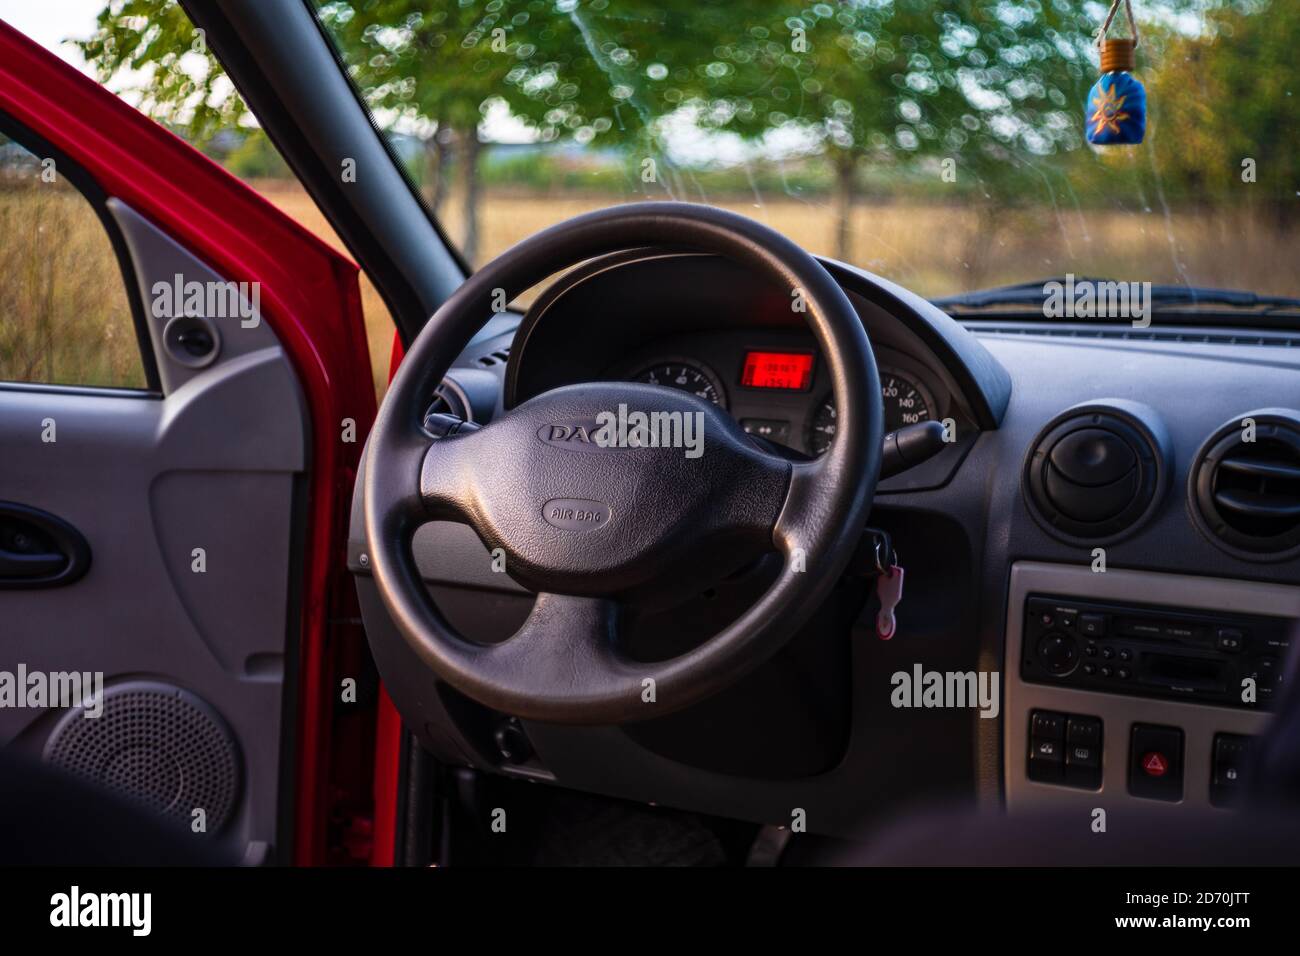 Dacia logan hi-res stock photography and images - Alamy